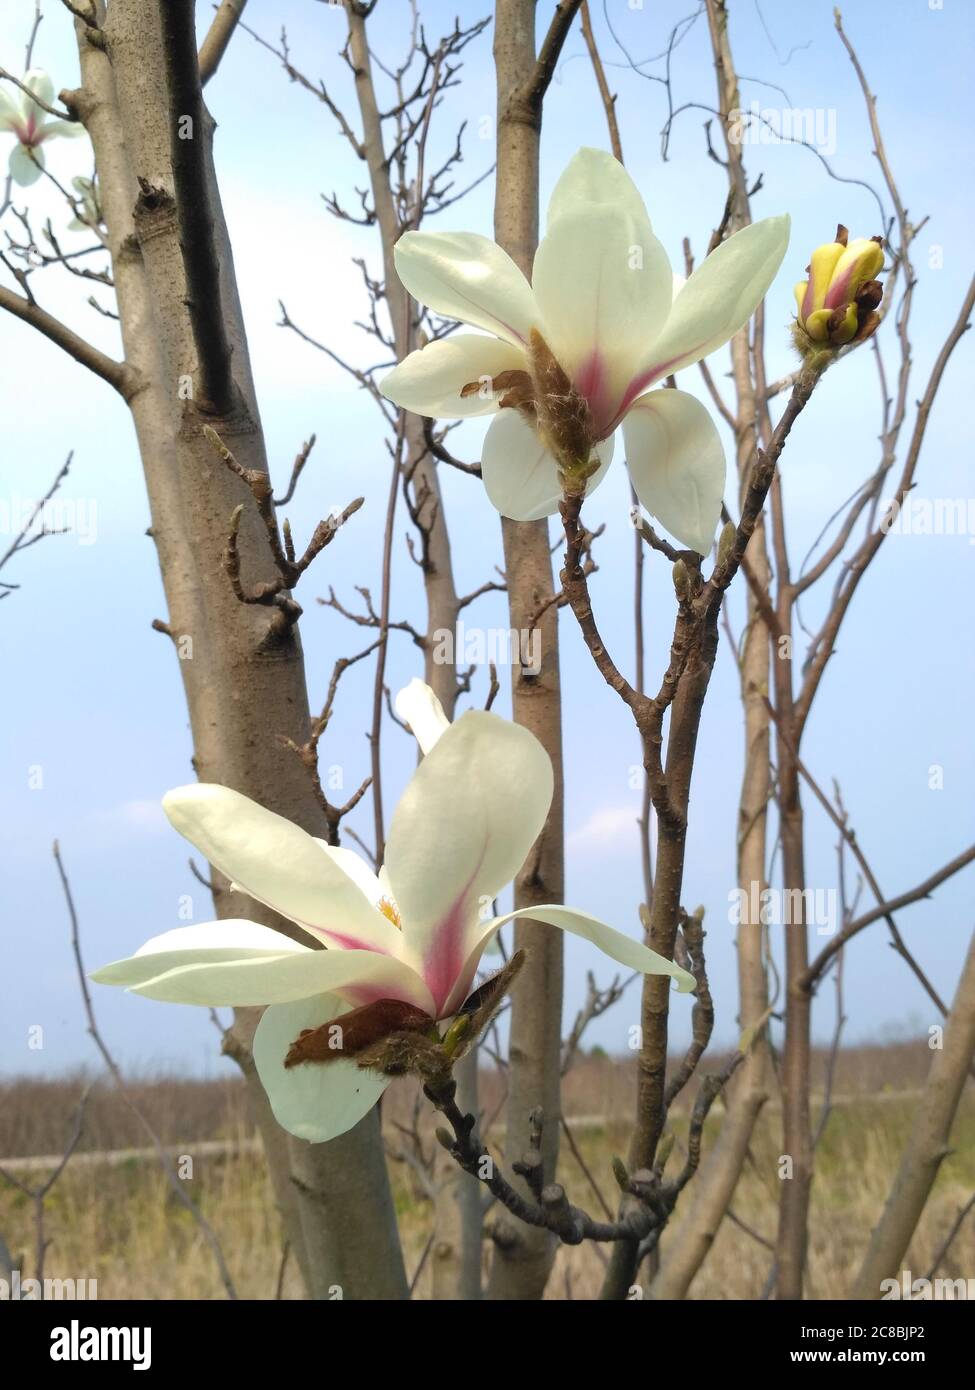 magnolia bianca con fondo rosso fiorito senza foglie ancora non esce; il tronco ha piccoli germogli su di esso Foto Stock